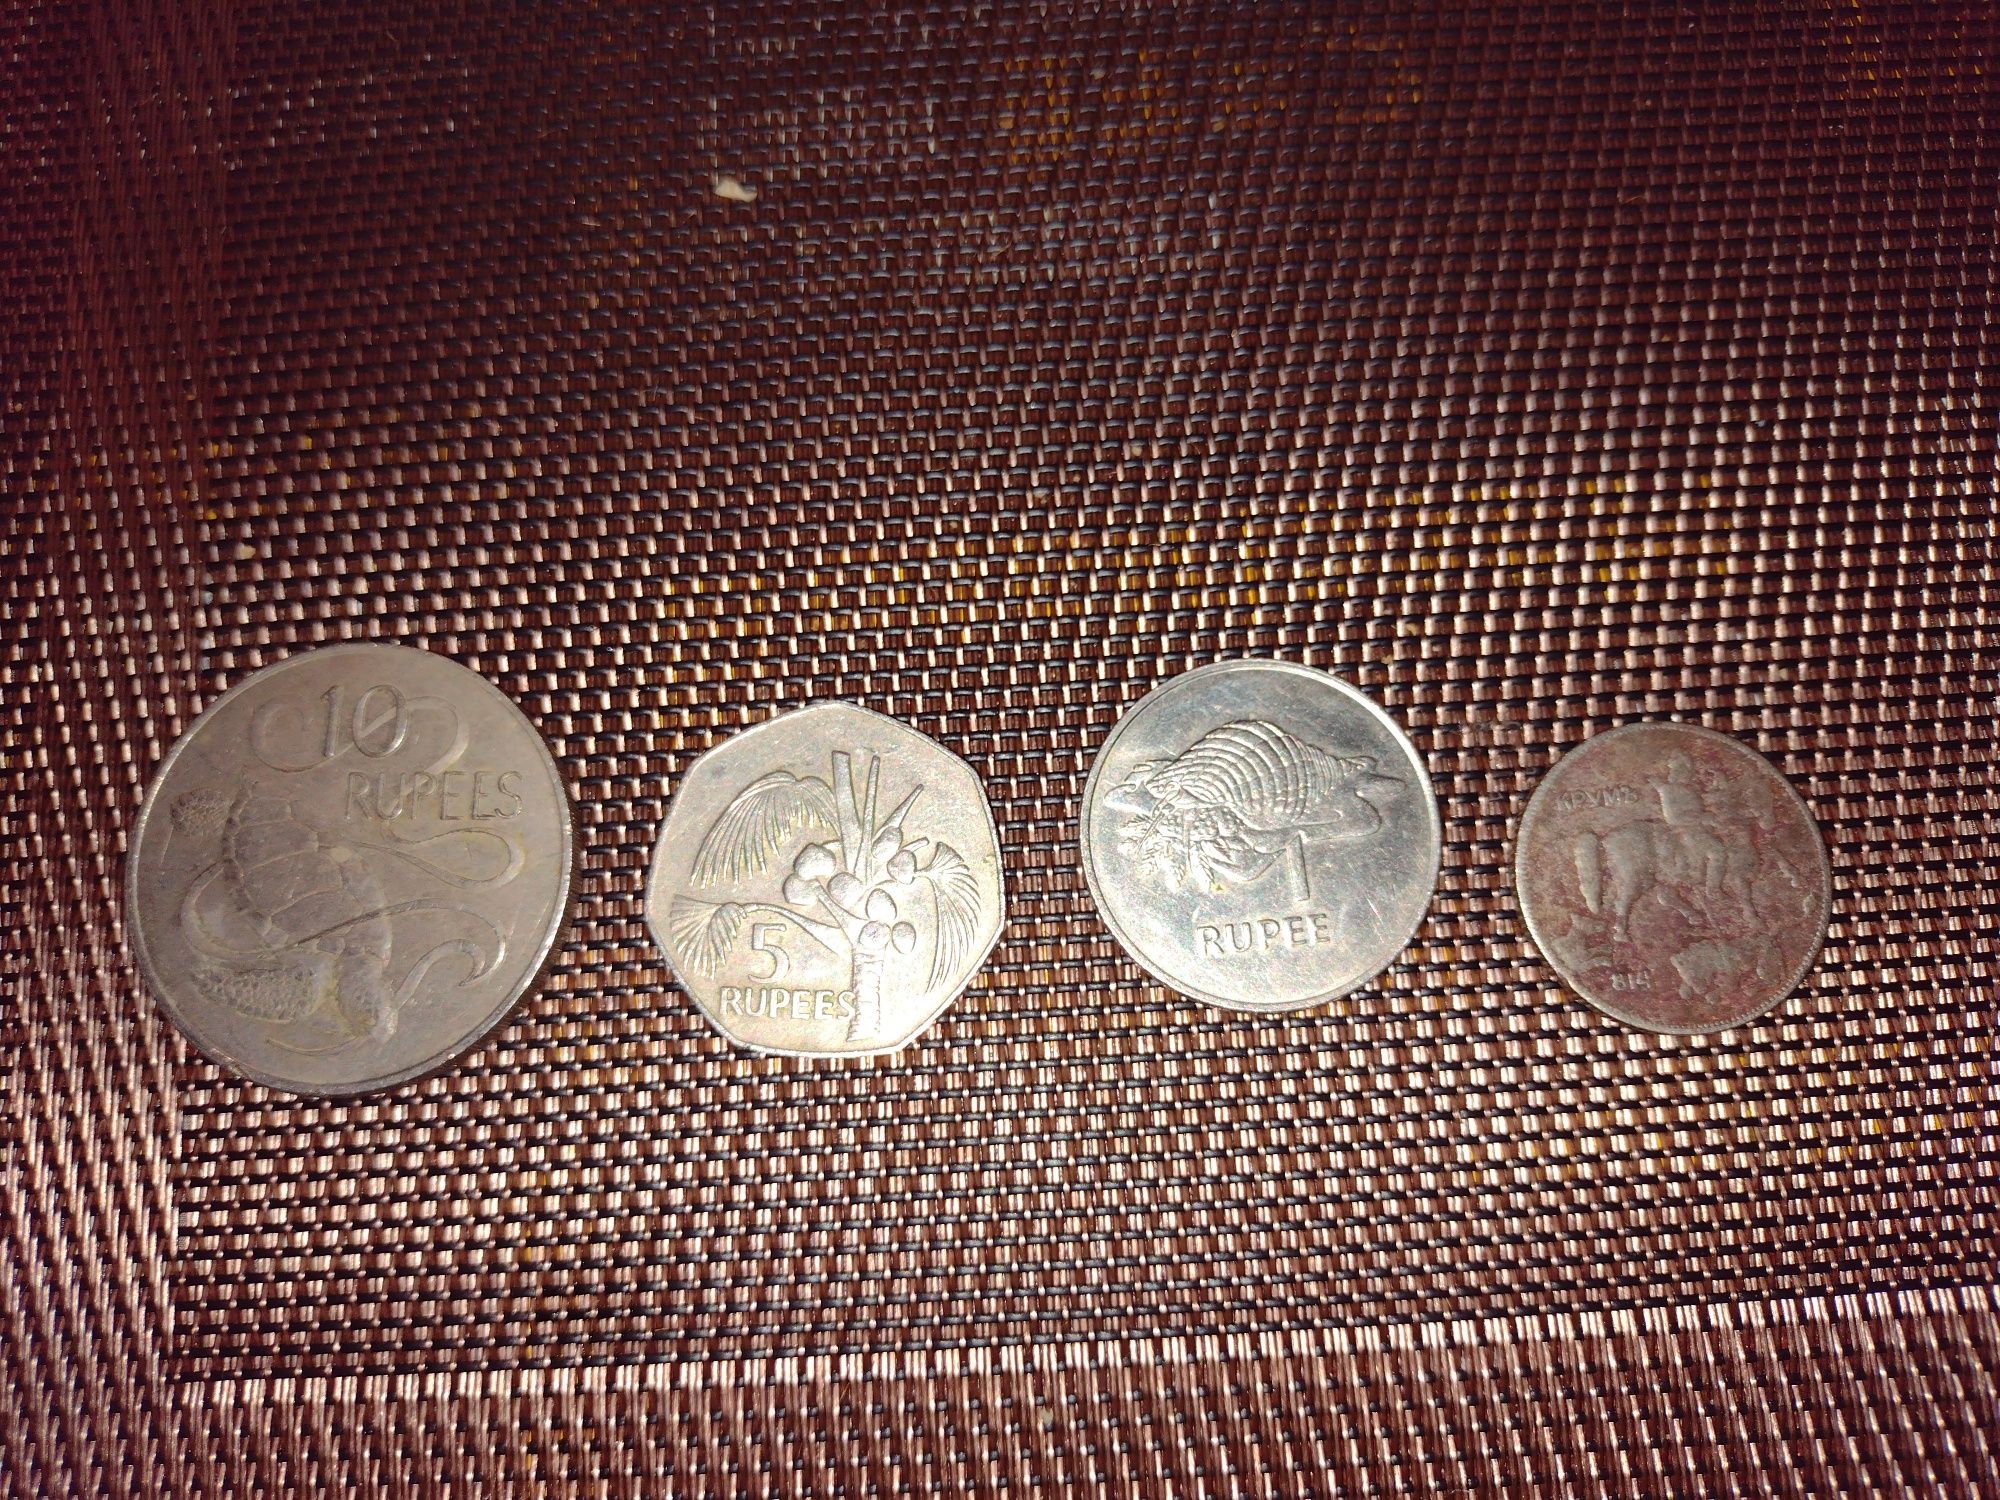 Monezi vechi de colecție